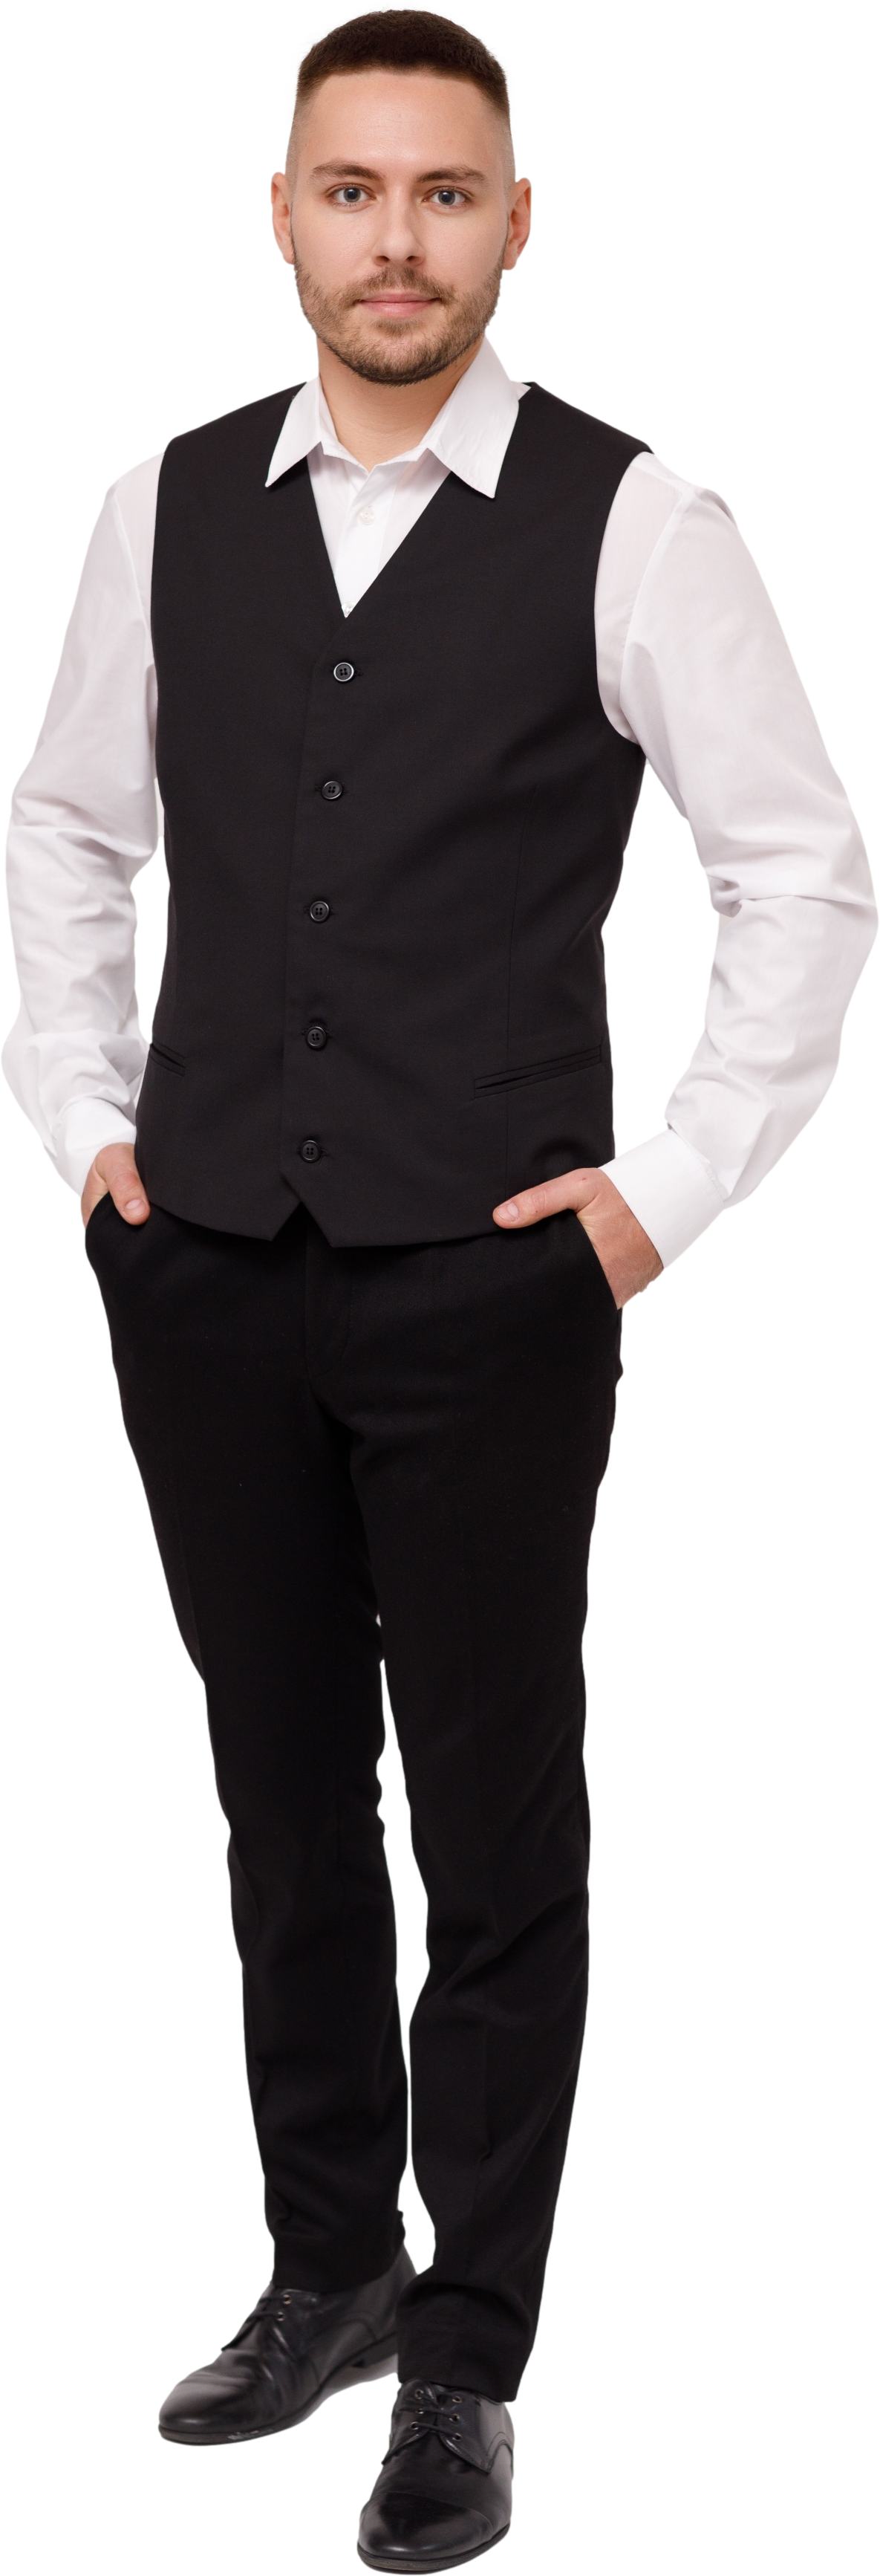 Трикотажный комплект для администратора CHICAGO - пиджак / брюки, мужской. 